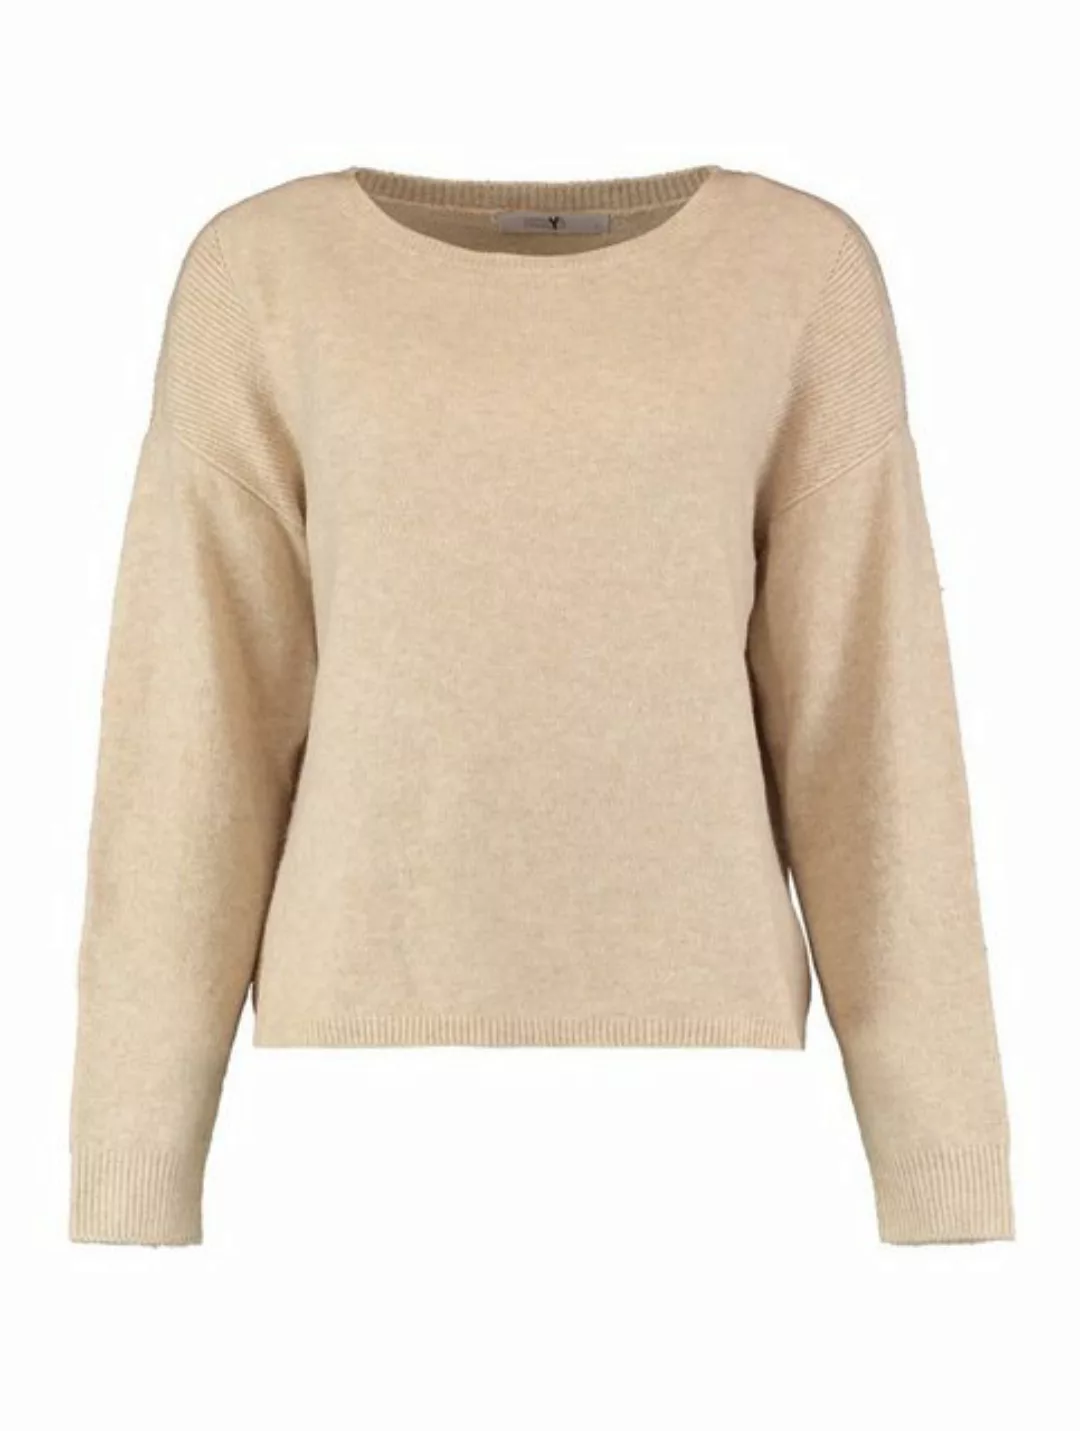 HaILY’S Strickpullover Regular Fit Strickpullover Langarm Sweater Ti44ne 59 günstig online kaufen